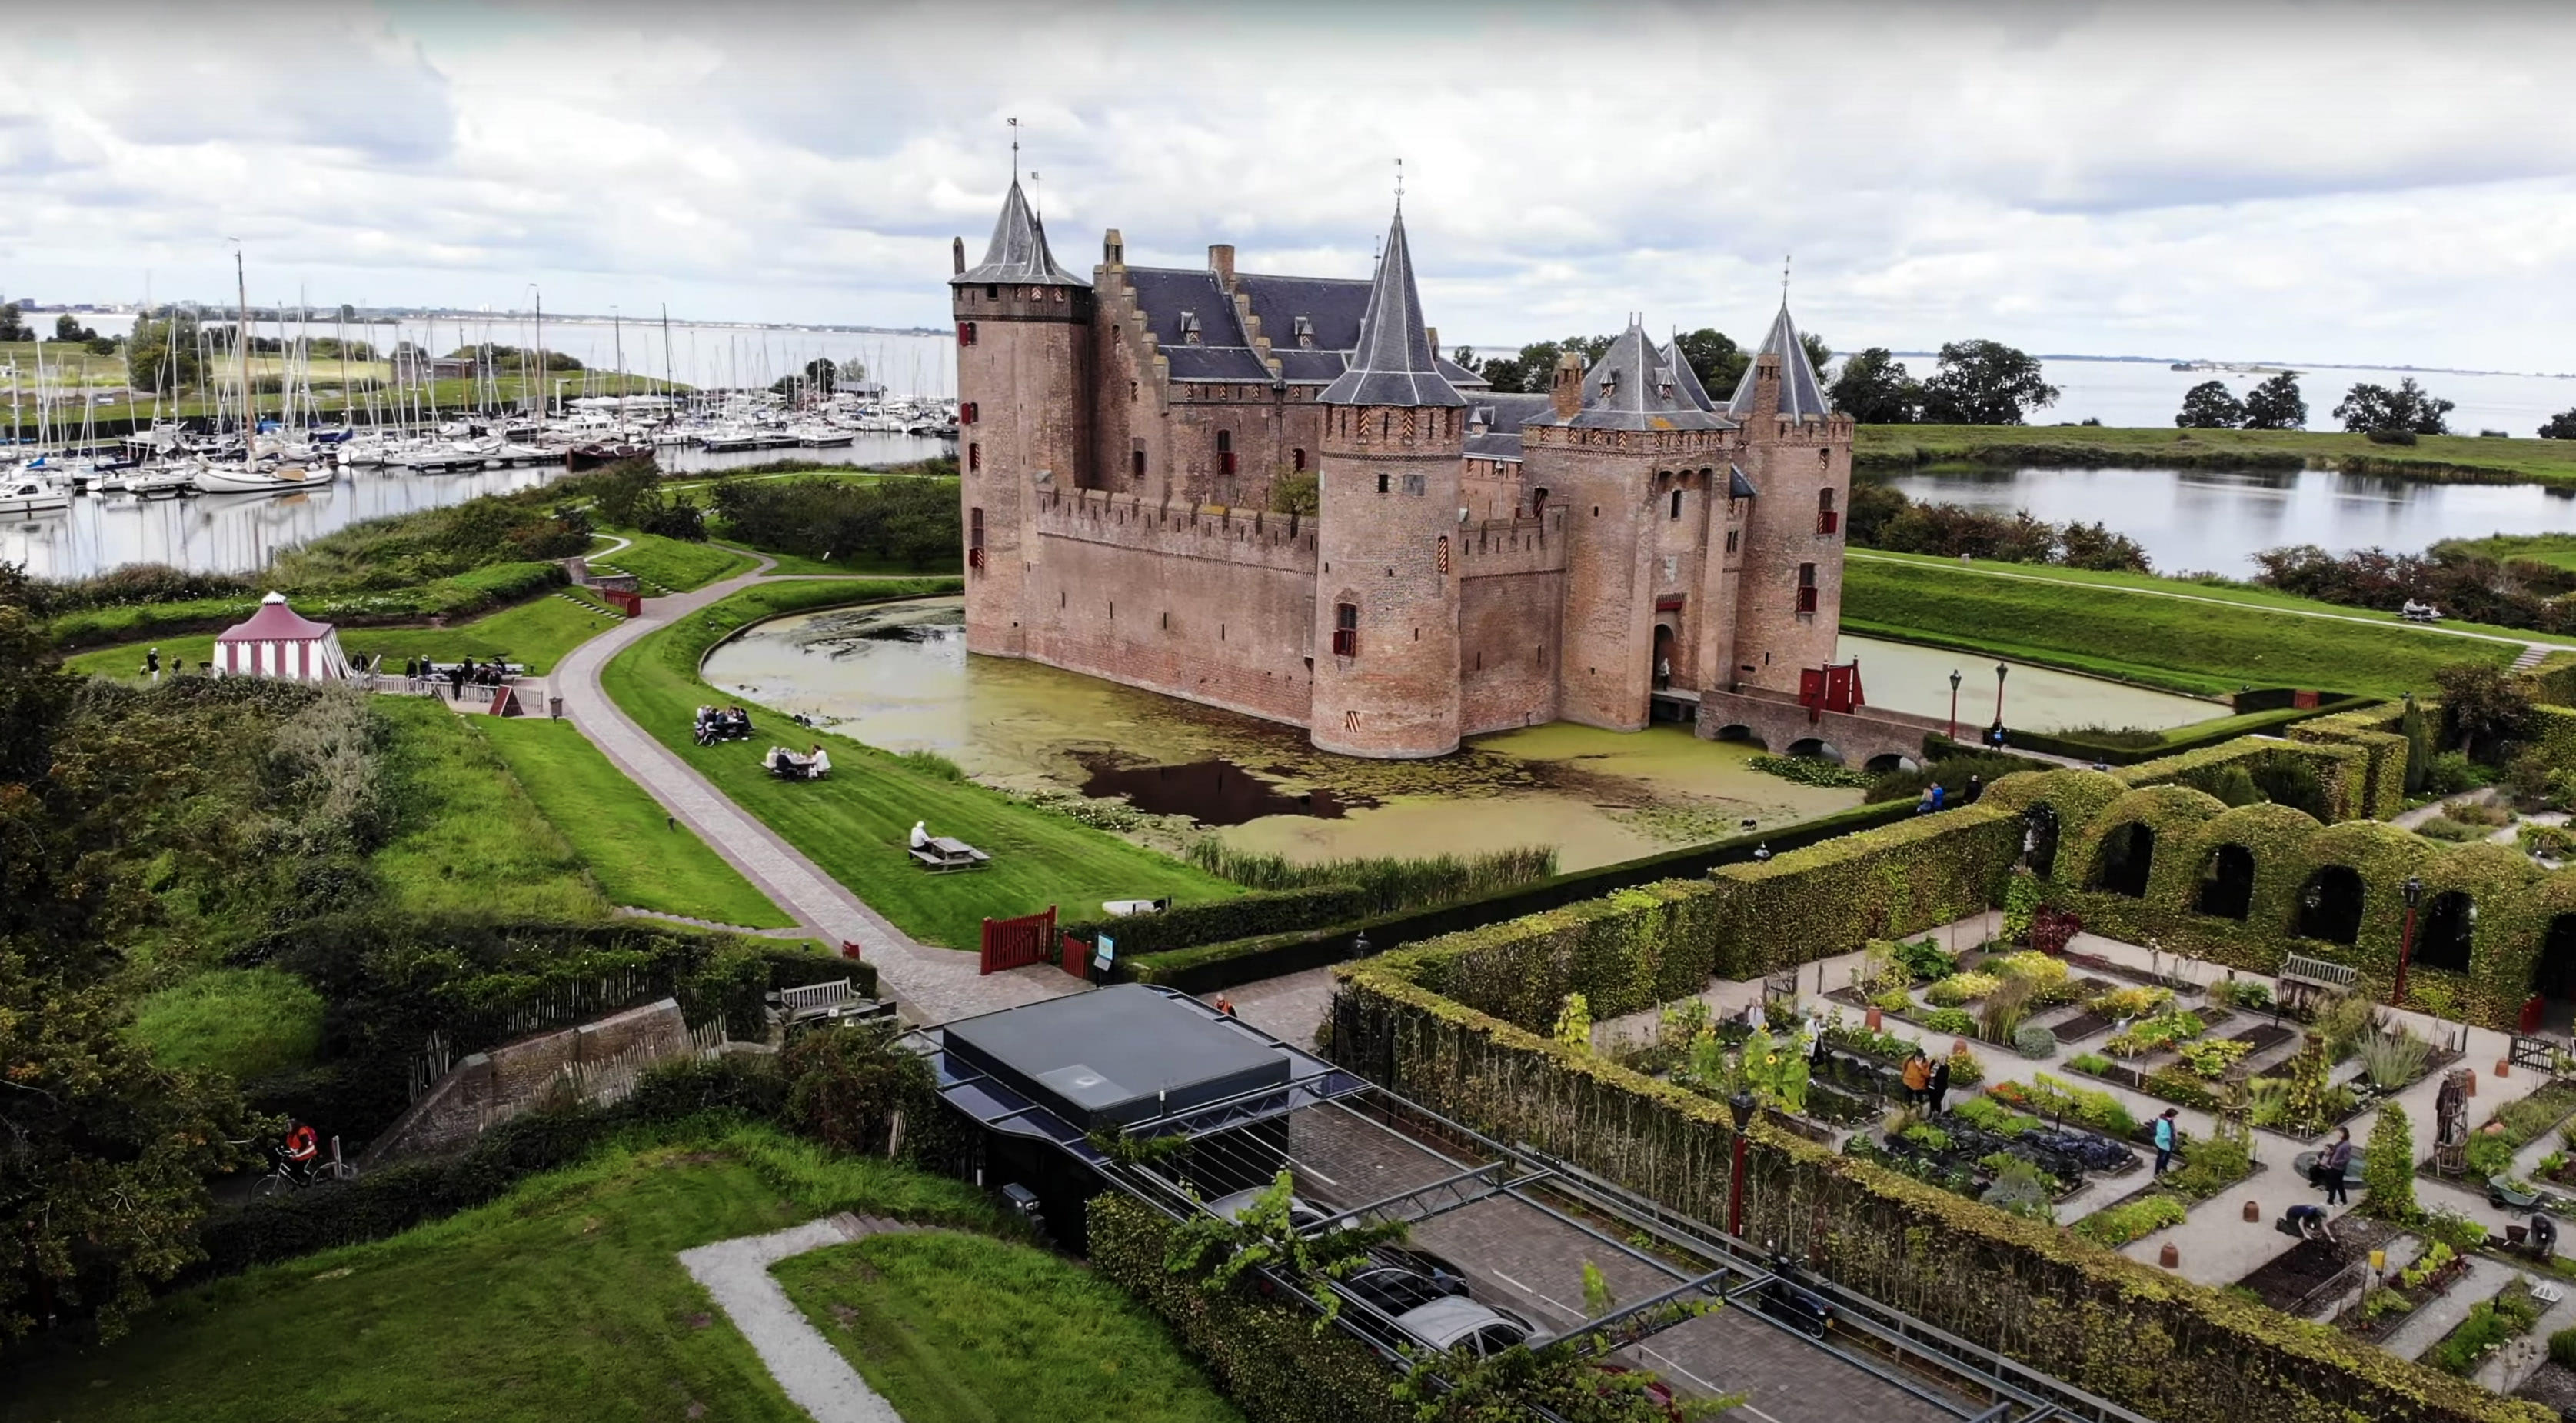 Путешествие по Голландии. Замок замок Мёйдерслот. Виды с коптера